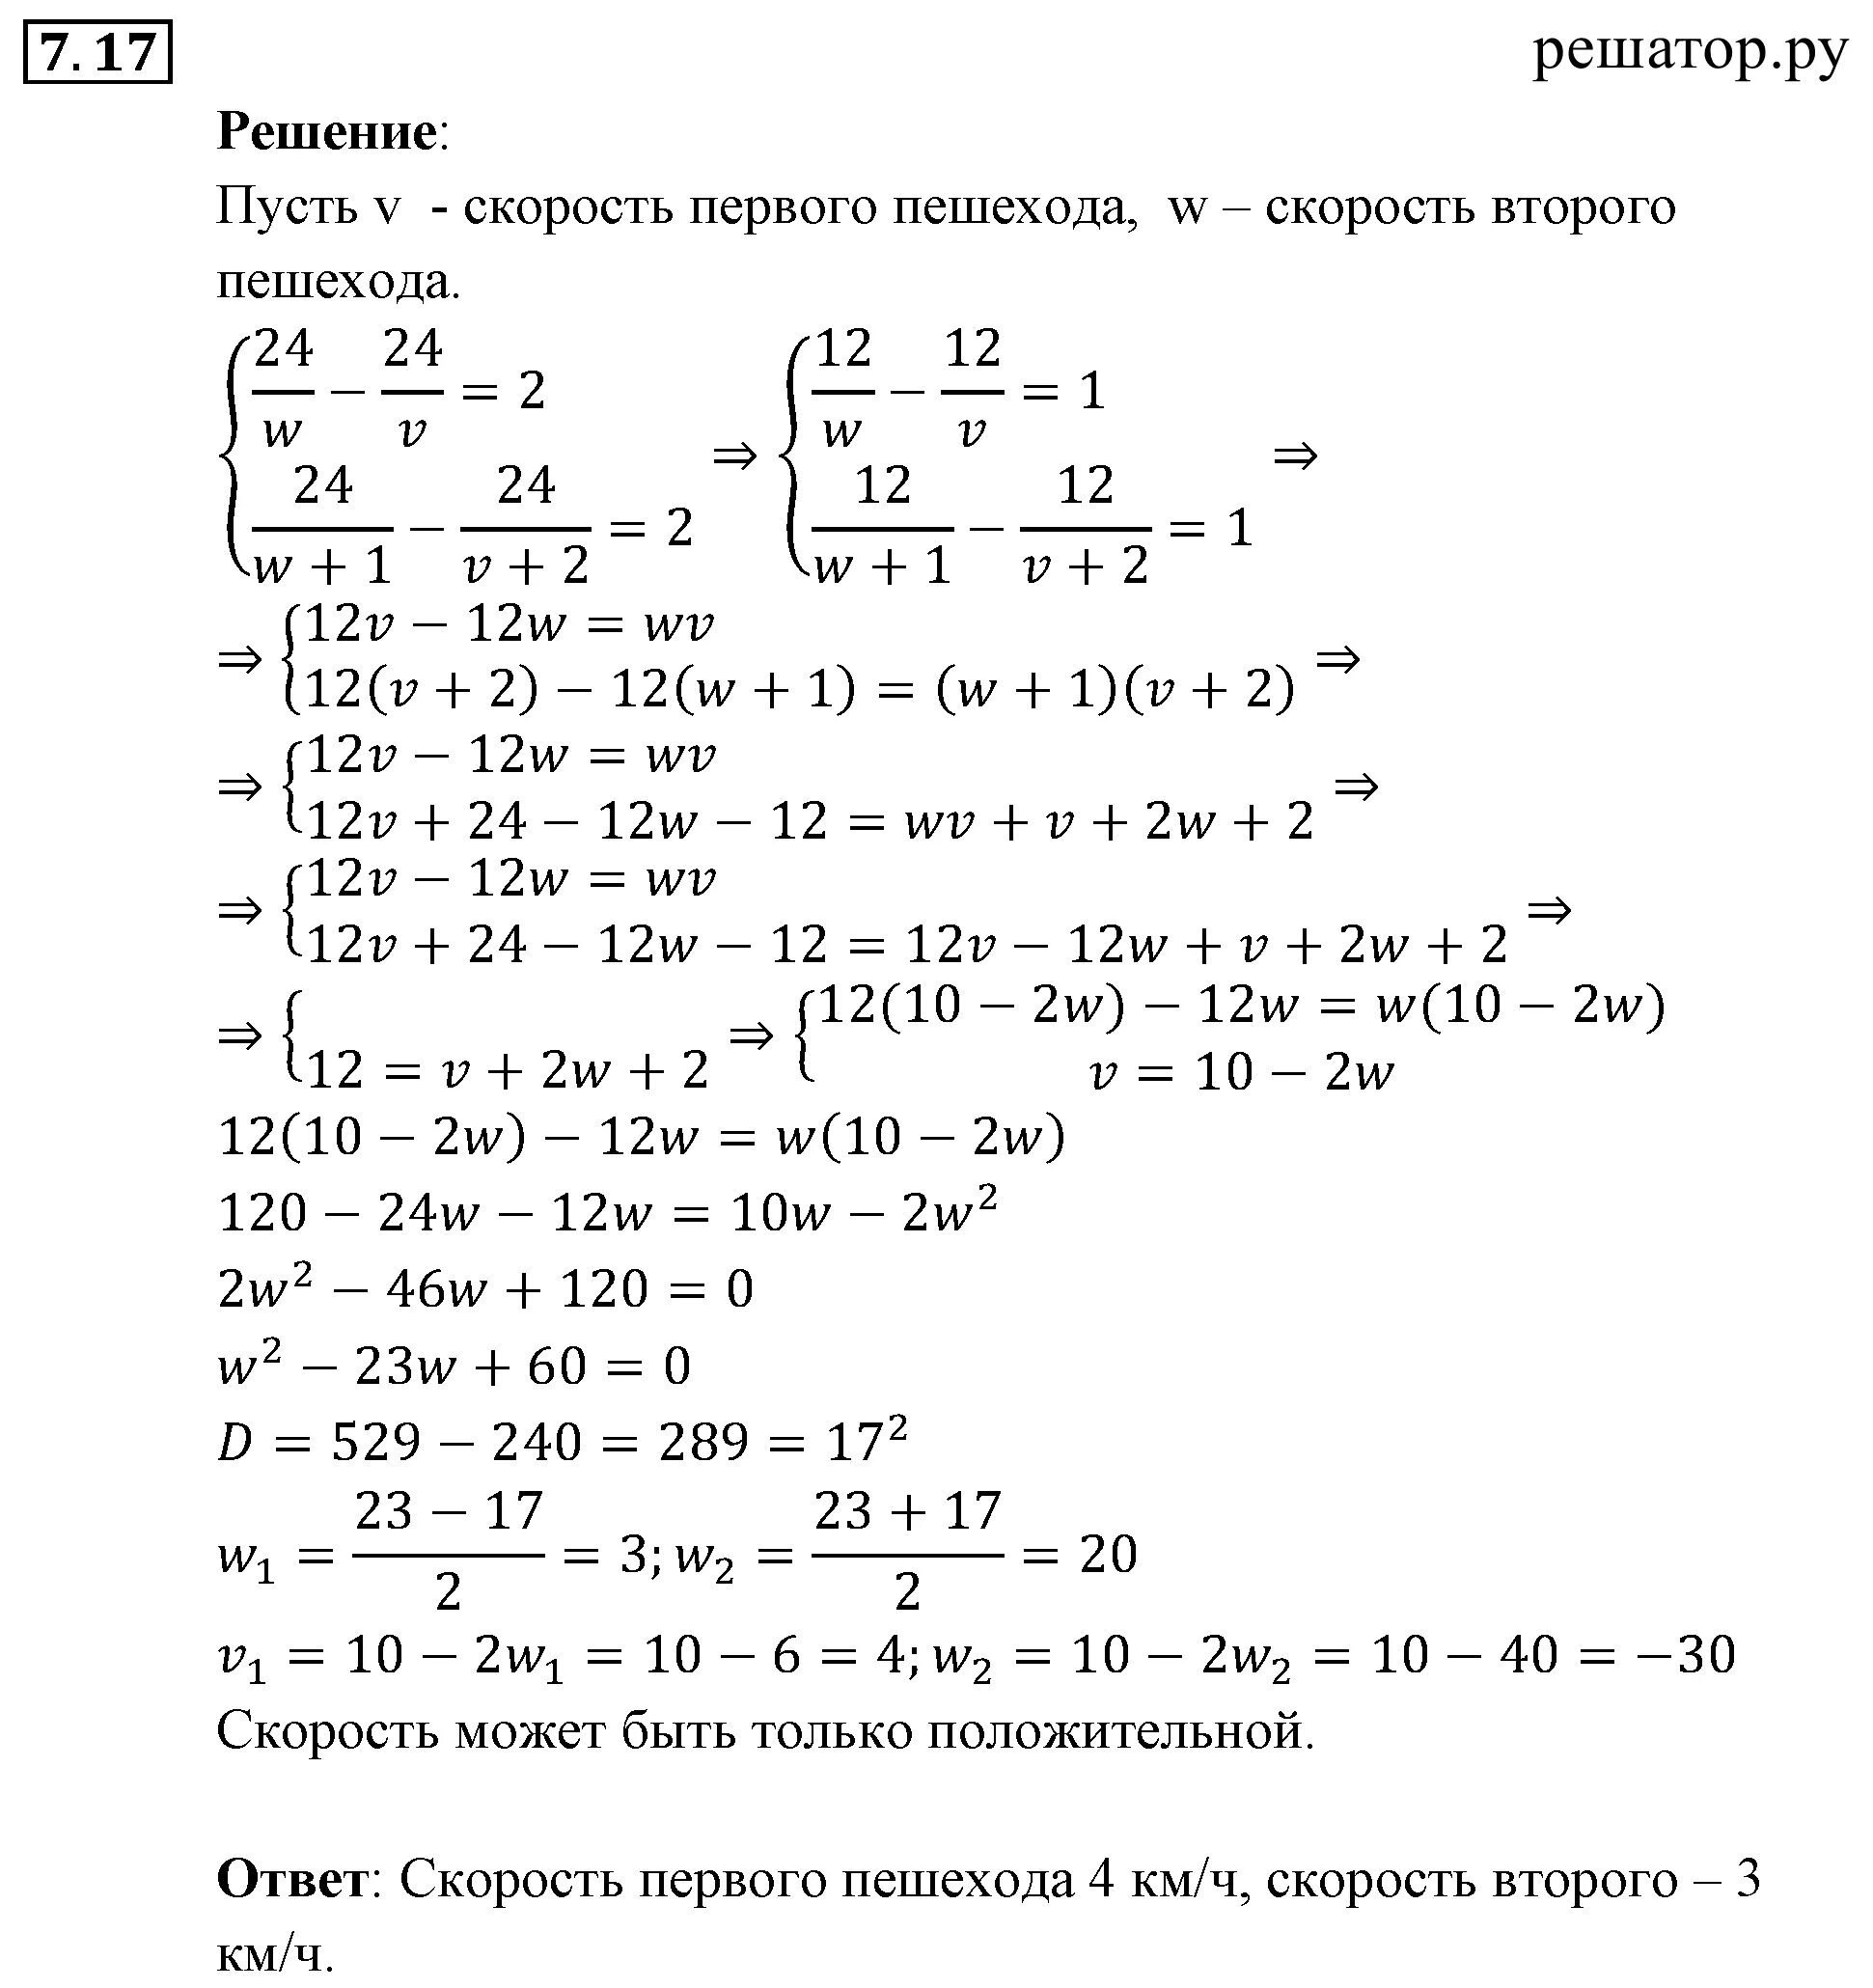 7.17 Алгебра 9 класс Мордкович. Алгебра 7 класс Мордкович 9.18. Решебник по математике мордкович